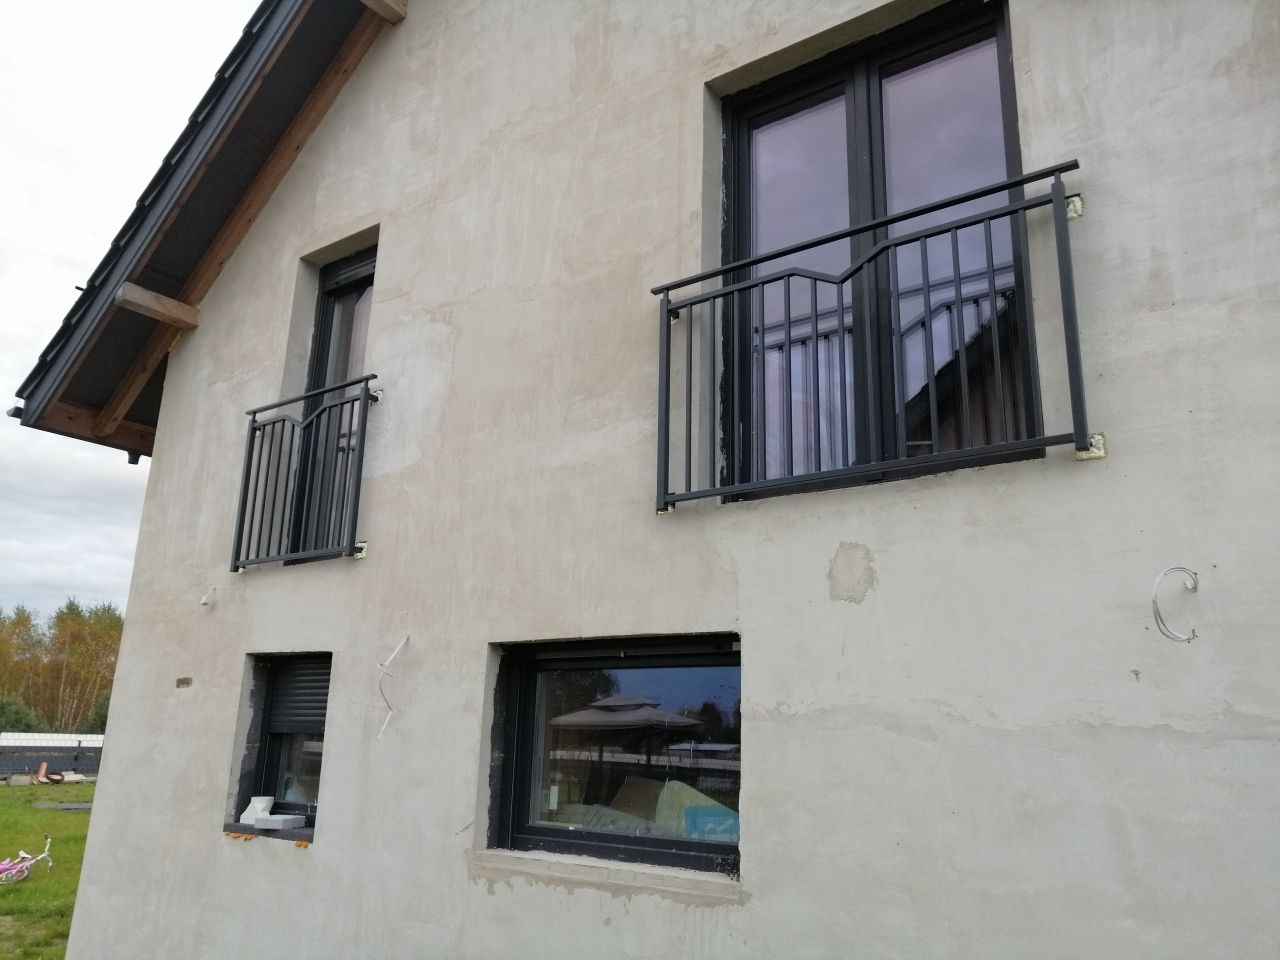 Balkon francuski barierka na okno rzygownik